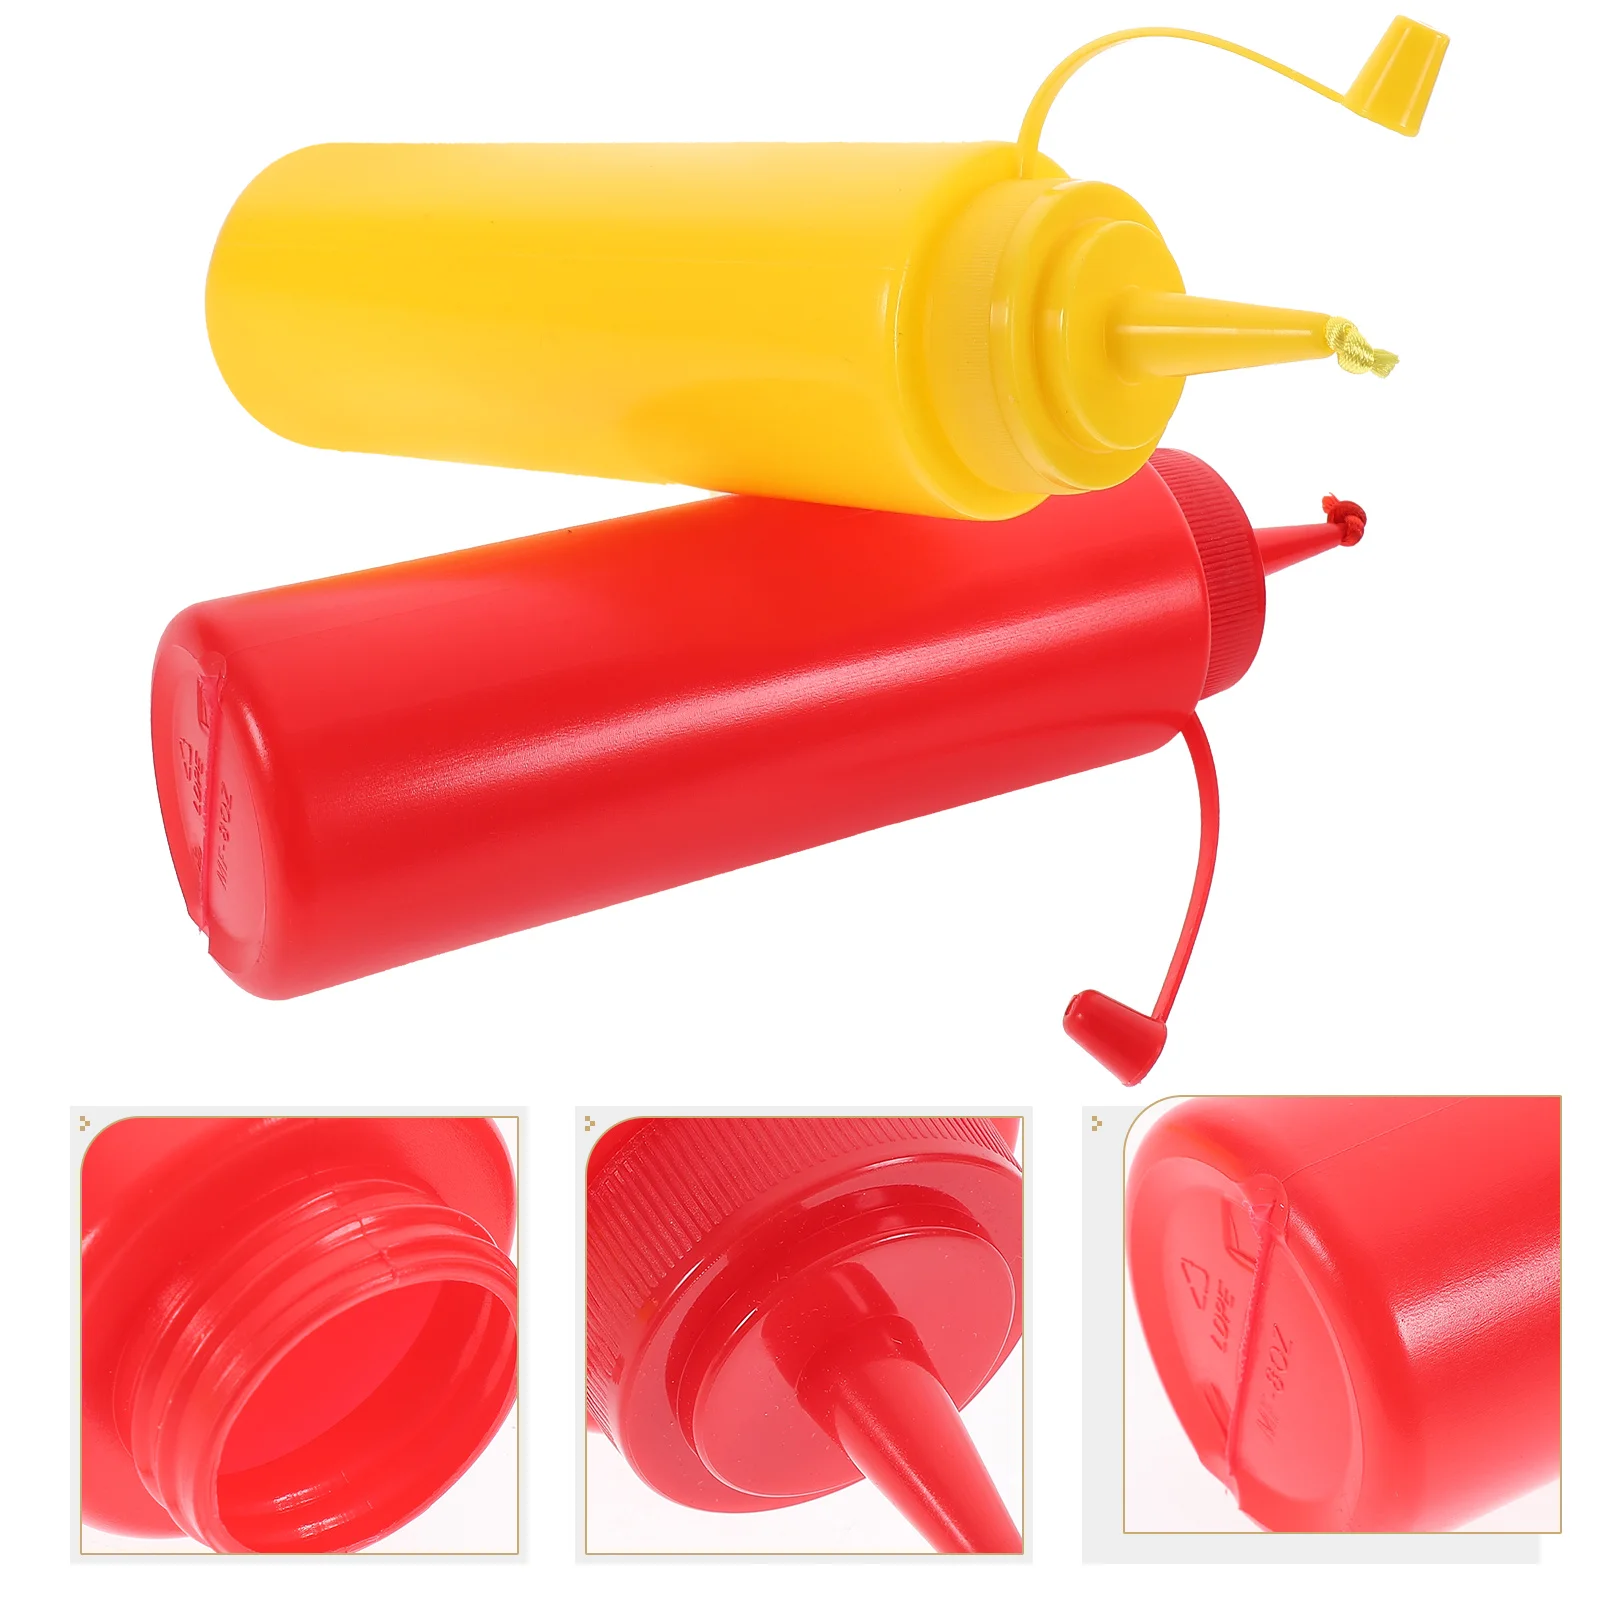 

2 шт. износостойкие игрушки для розыгрыша, Интерактивная поддельная горчица, смешная поддельная кетчуп, товары для дома